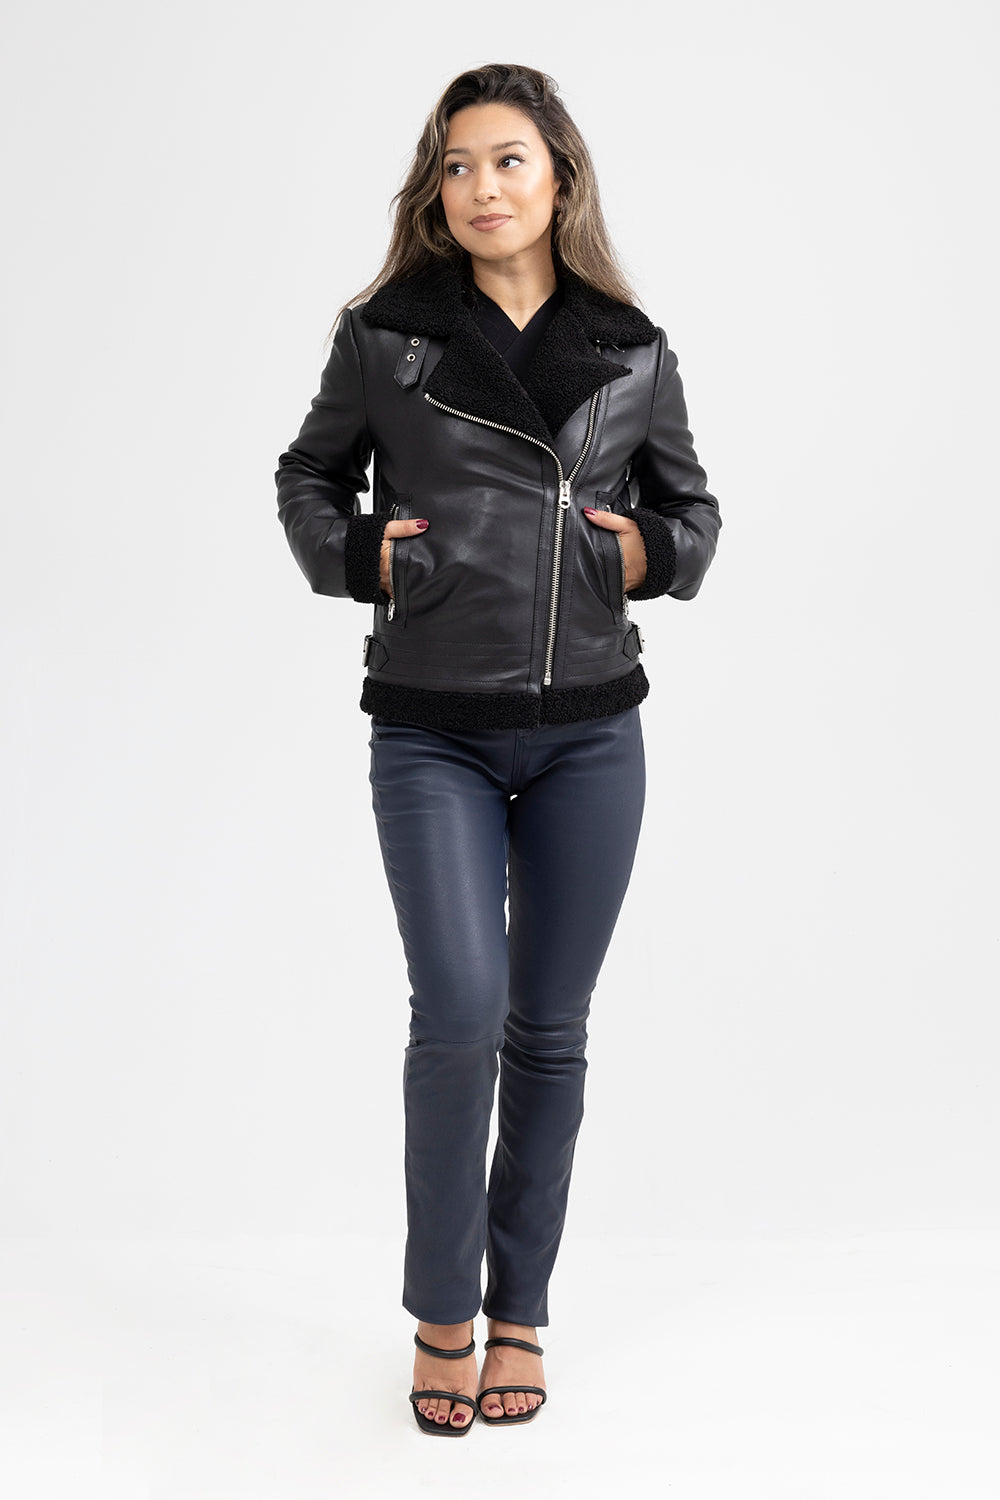 Chelsea - Women's Leather Jacket